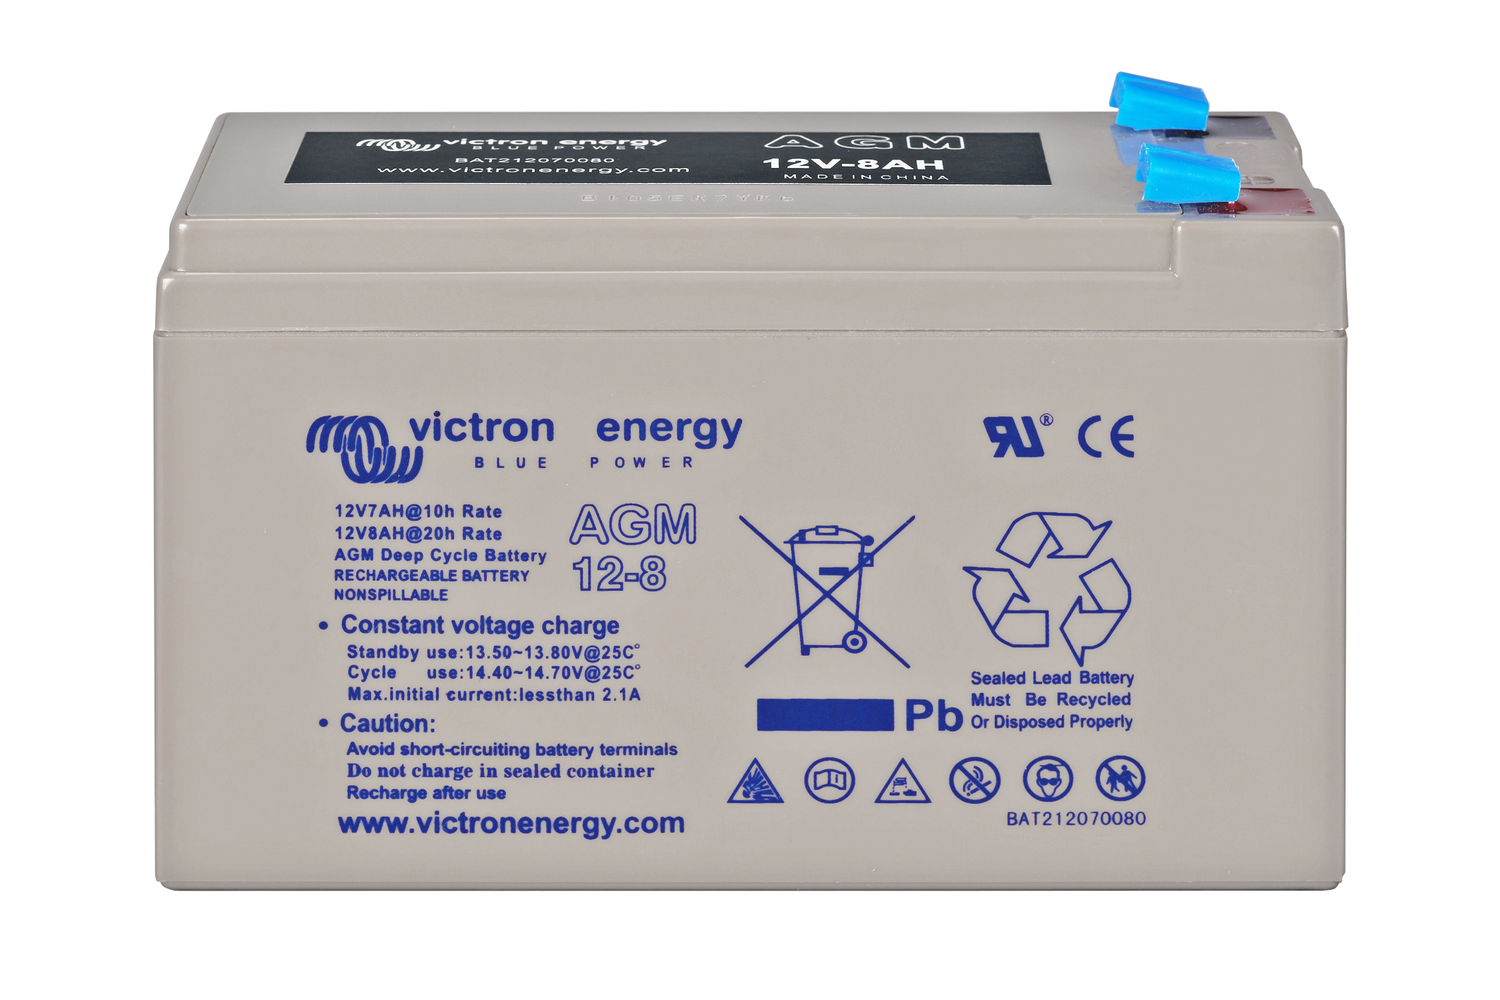 Batterie gel AGM VRLA 6V 5Ah Green Cell - Livraison gratuite